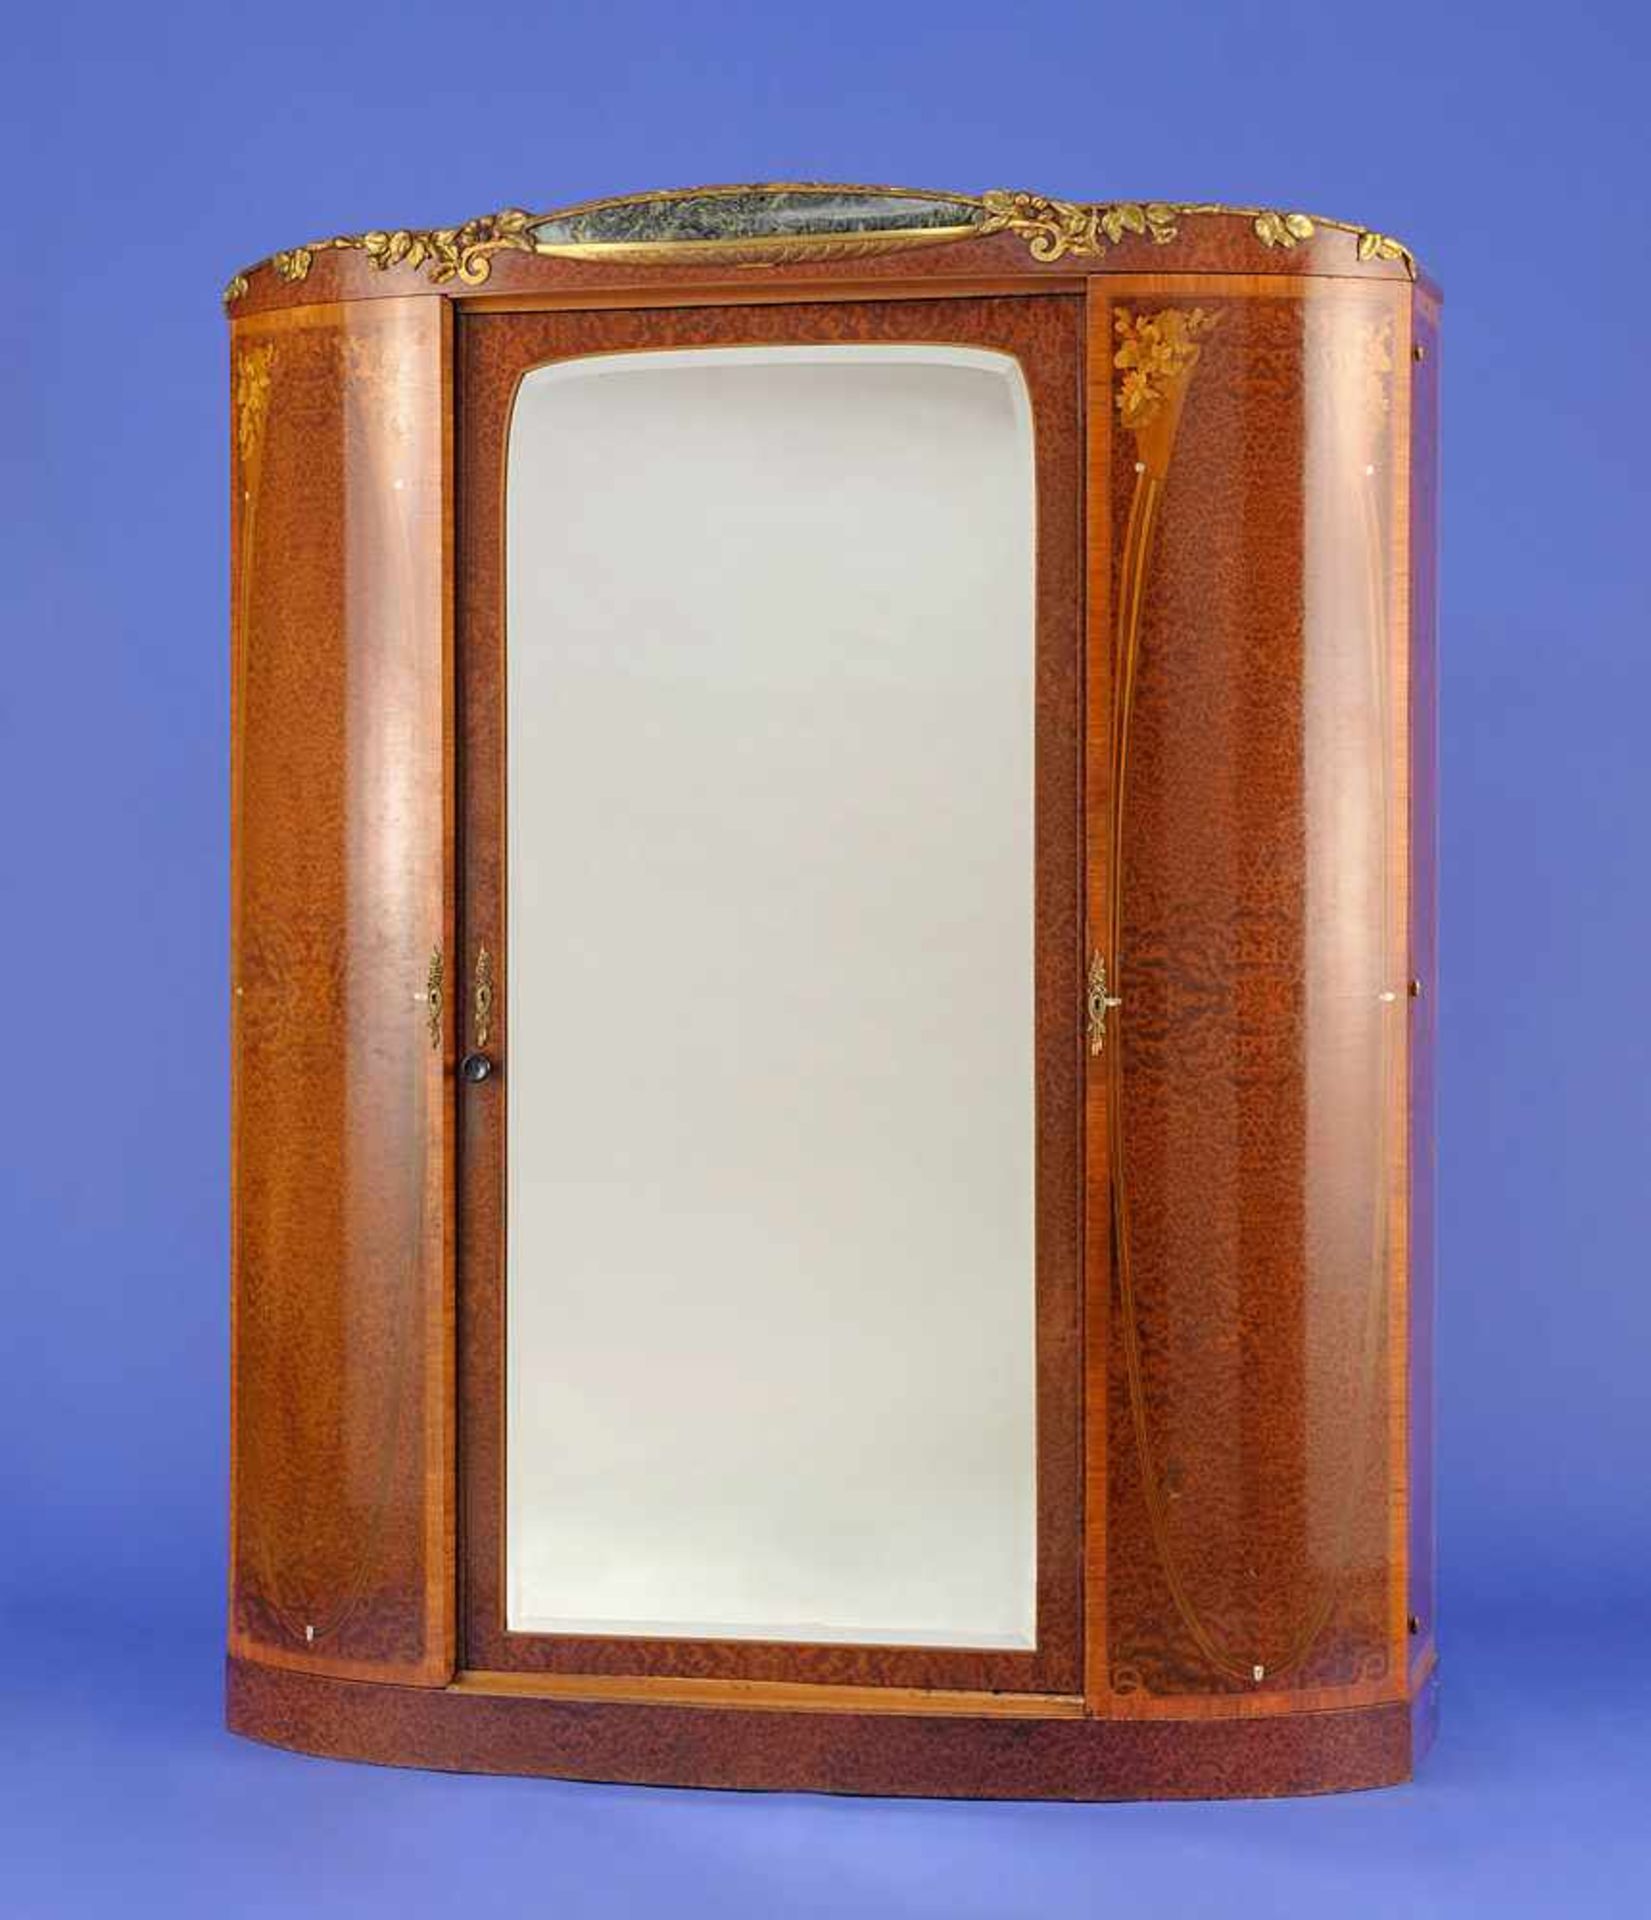 Jugendstil-Spiegelschrank Um 1900Dreitüriger, leicht gebogter Korpus mit vergoldeten